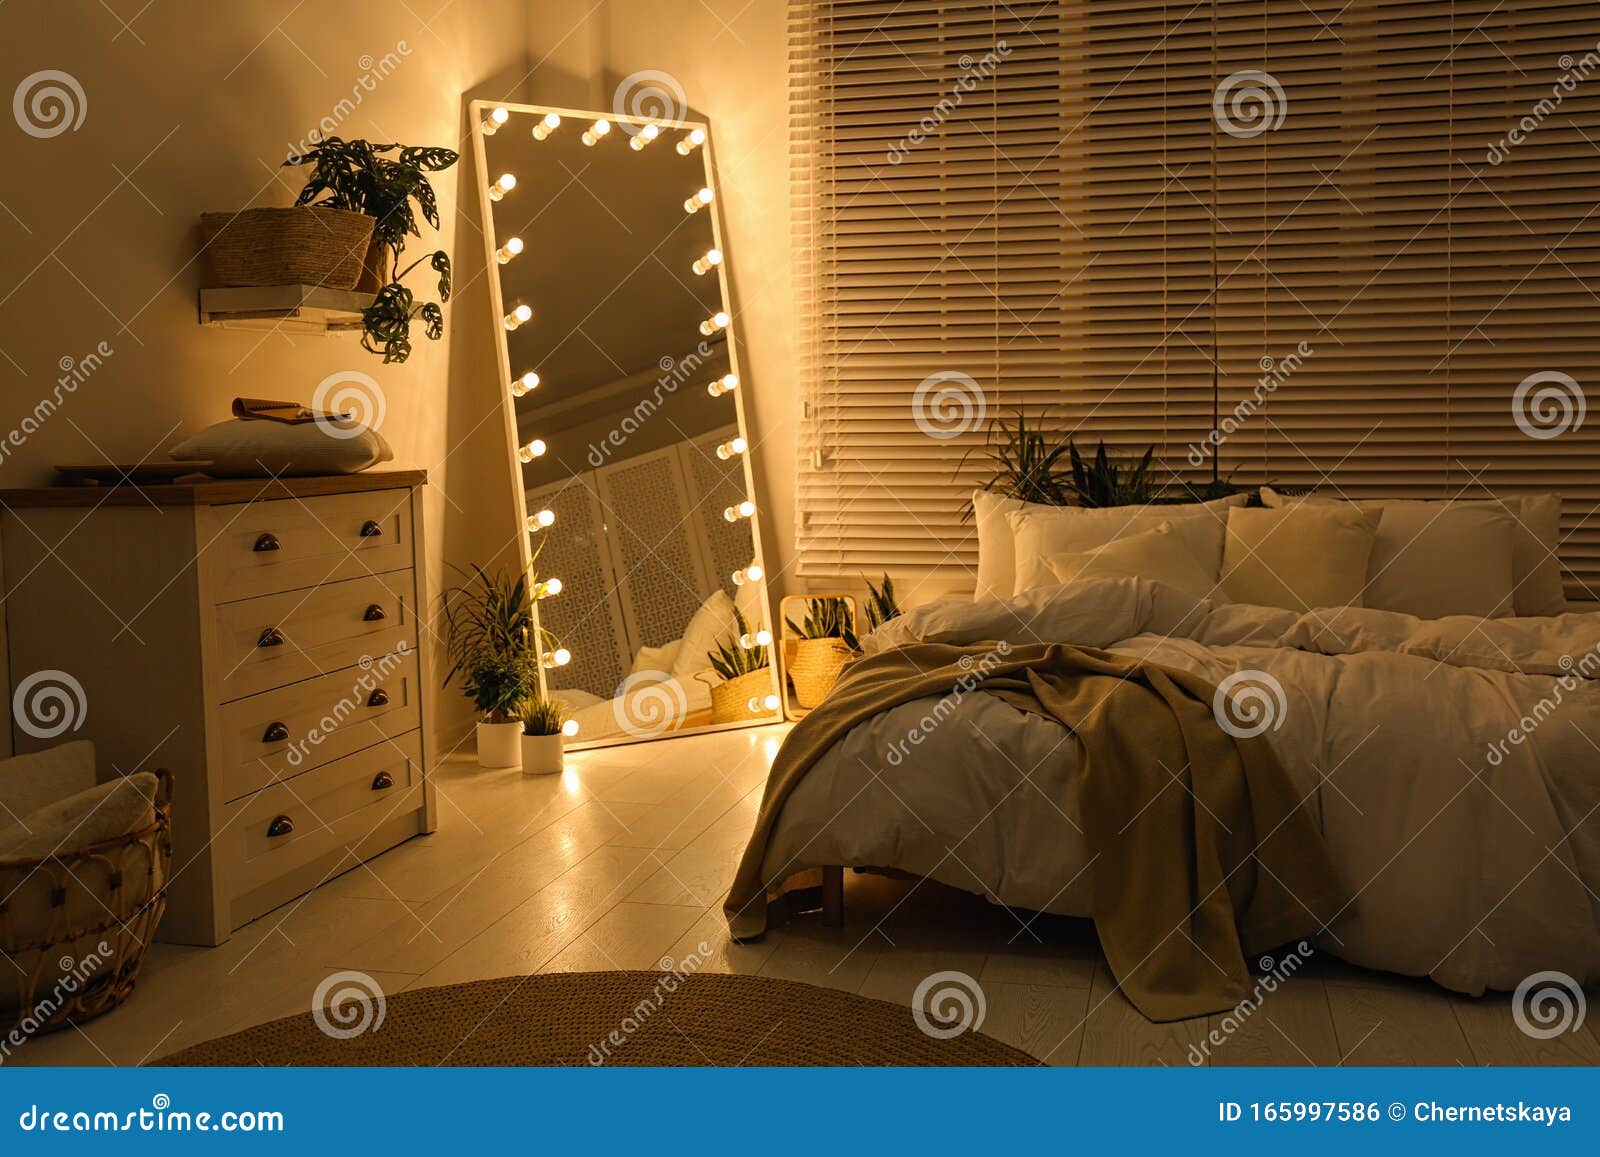 Stilvoller Spiegel Mit Glühbirnen Im Schlafzimmer Innengestaltung ...